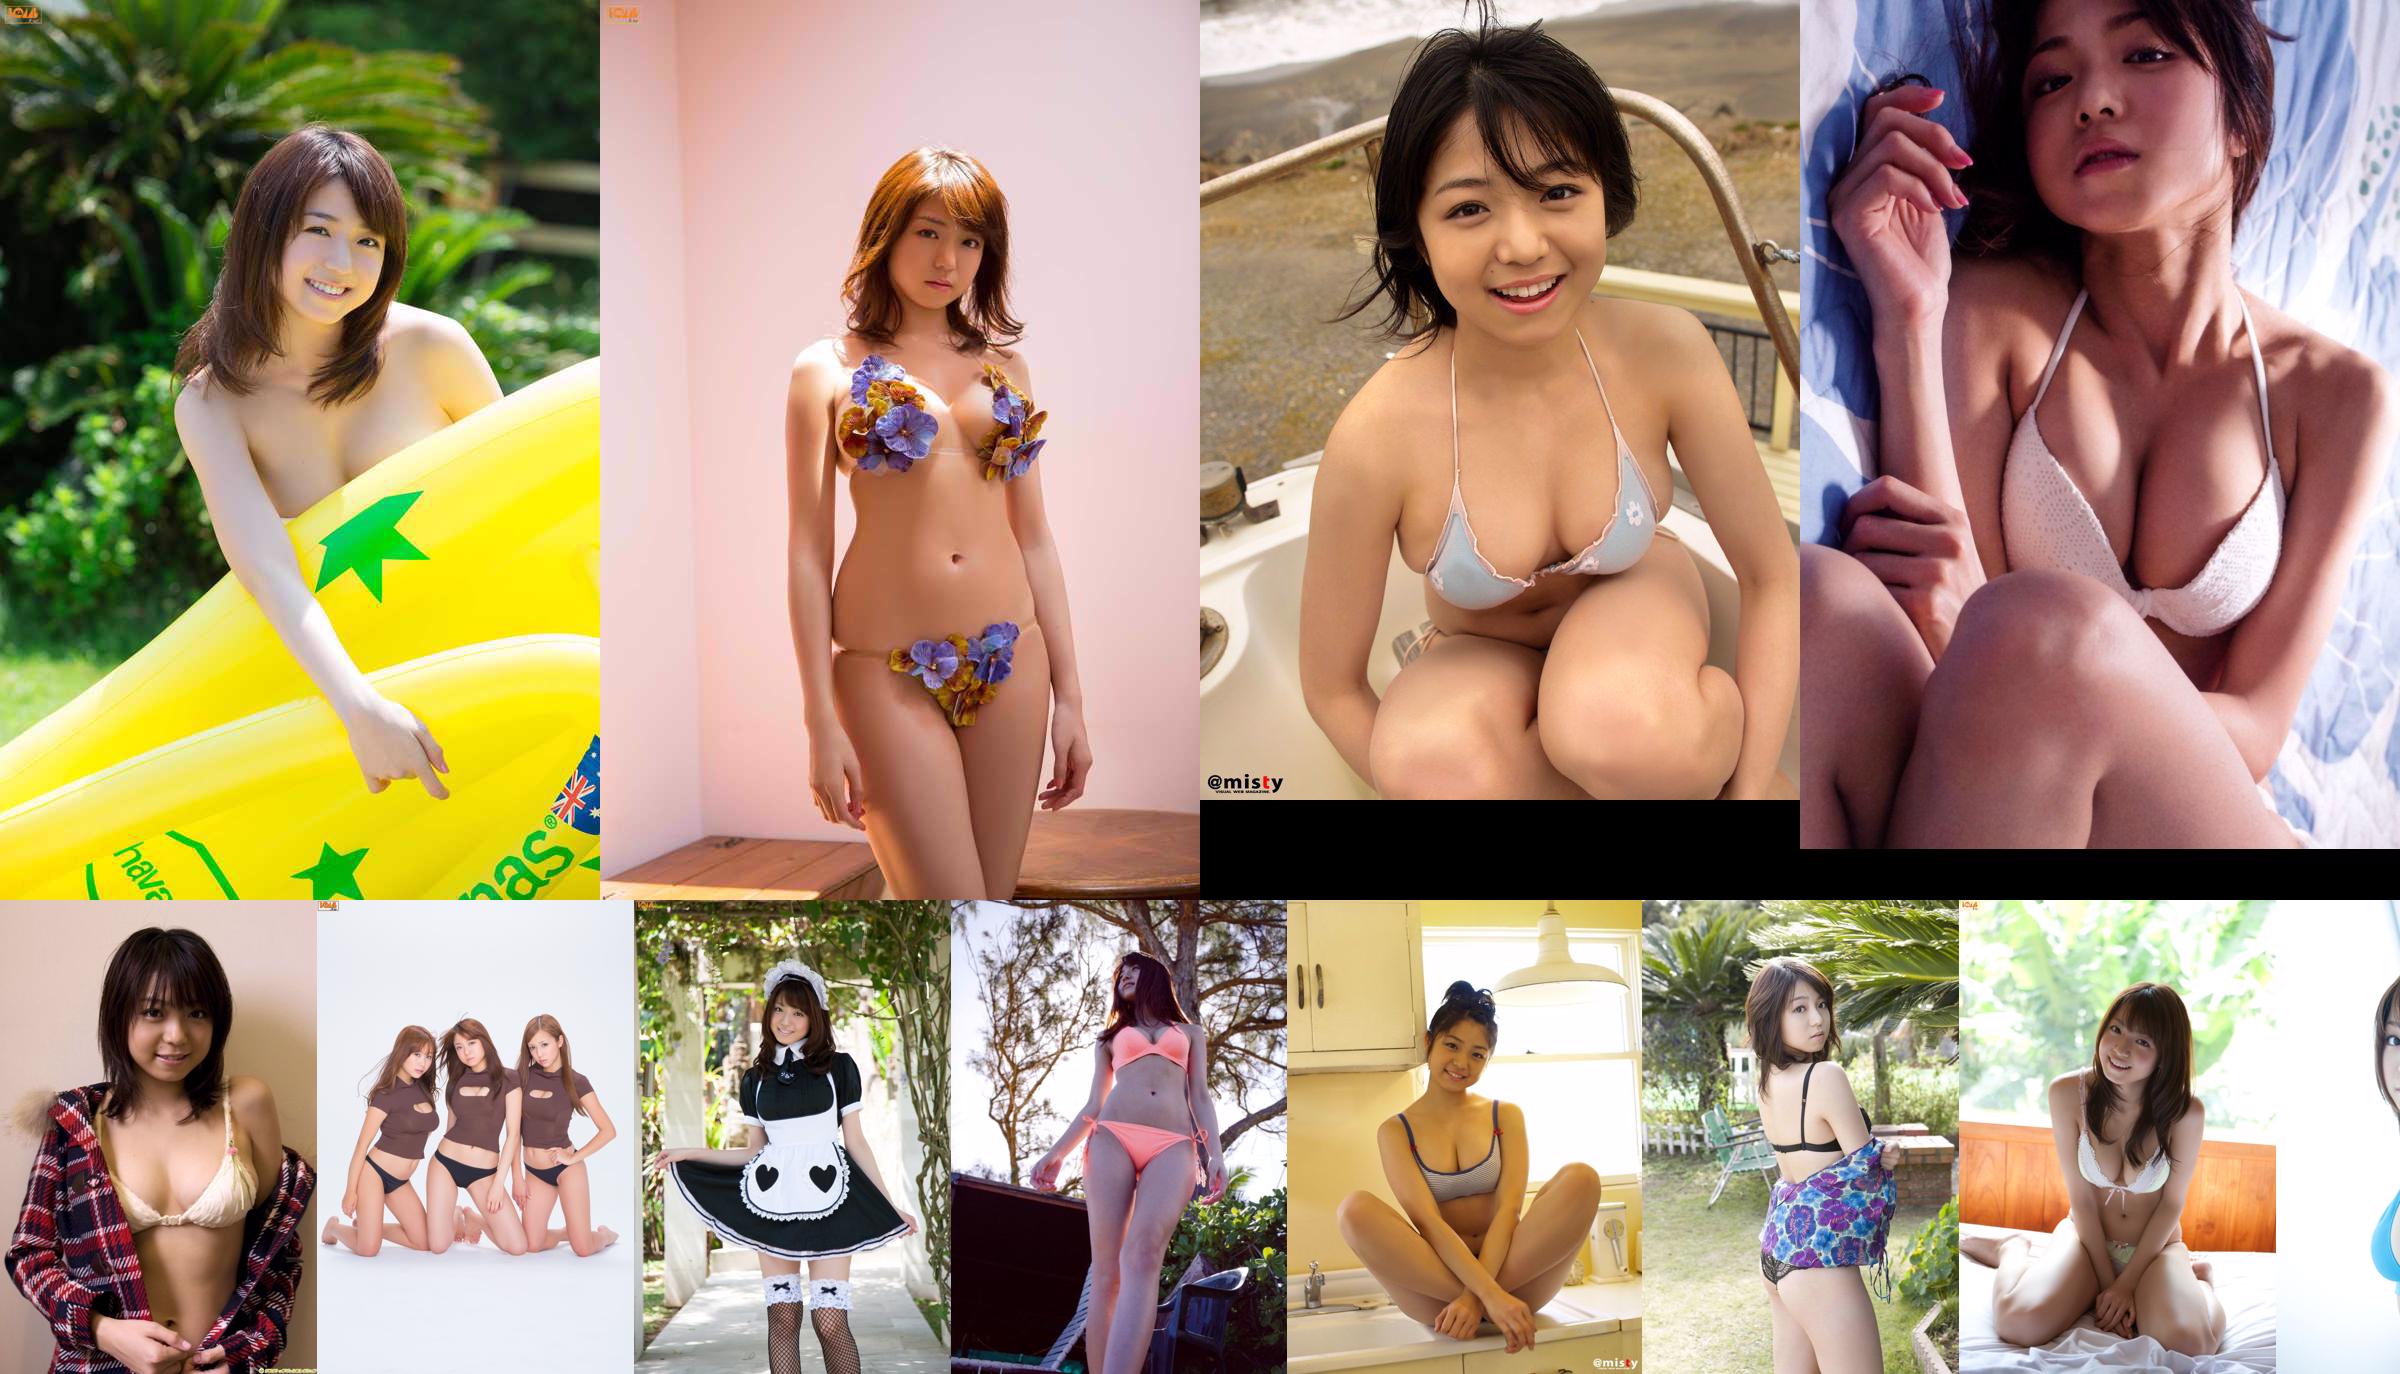 Nakamura Shizuka / Nishida Mai / Kamata Nazumi / Tani Momoko "¡Deseo popular! ¡Vamos al baño público! No.ae7bcb Página 1